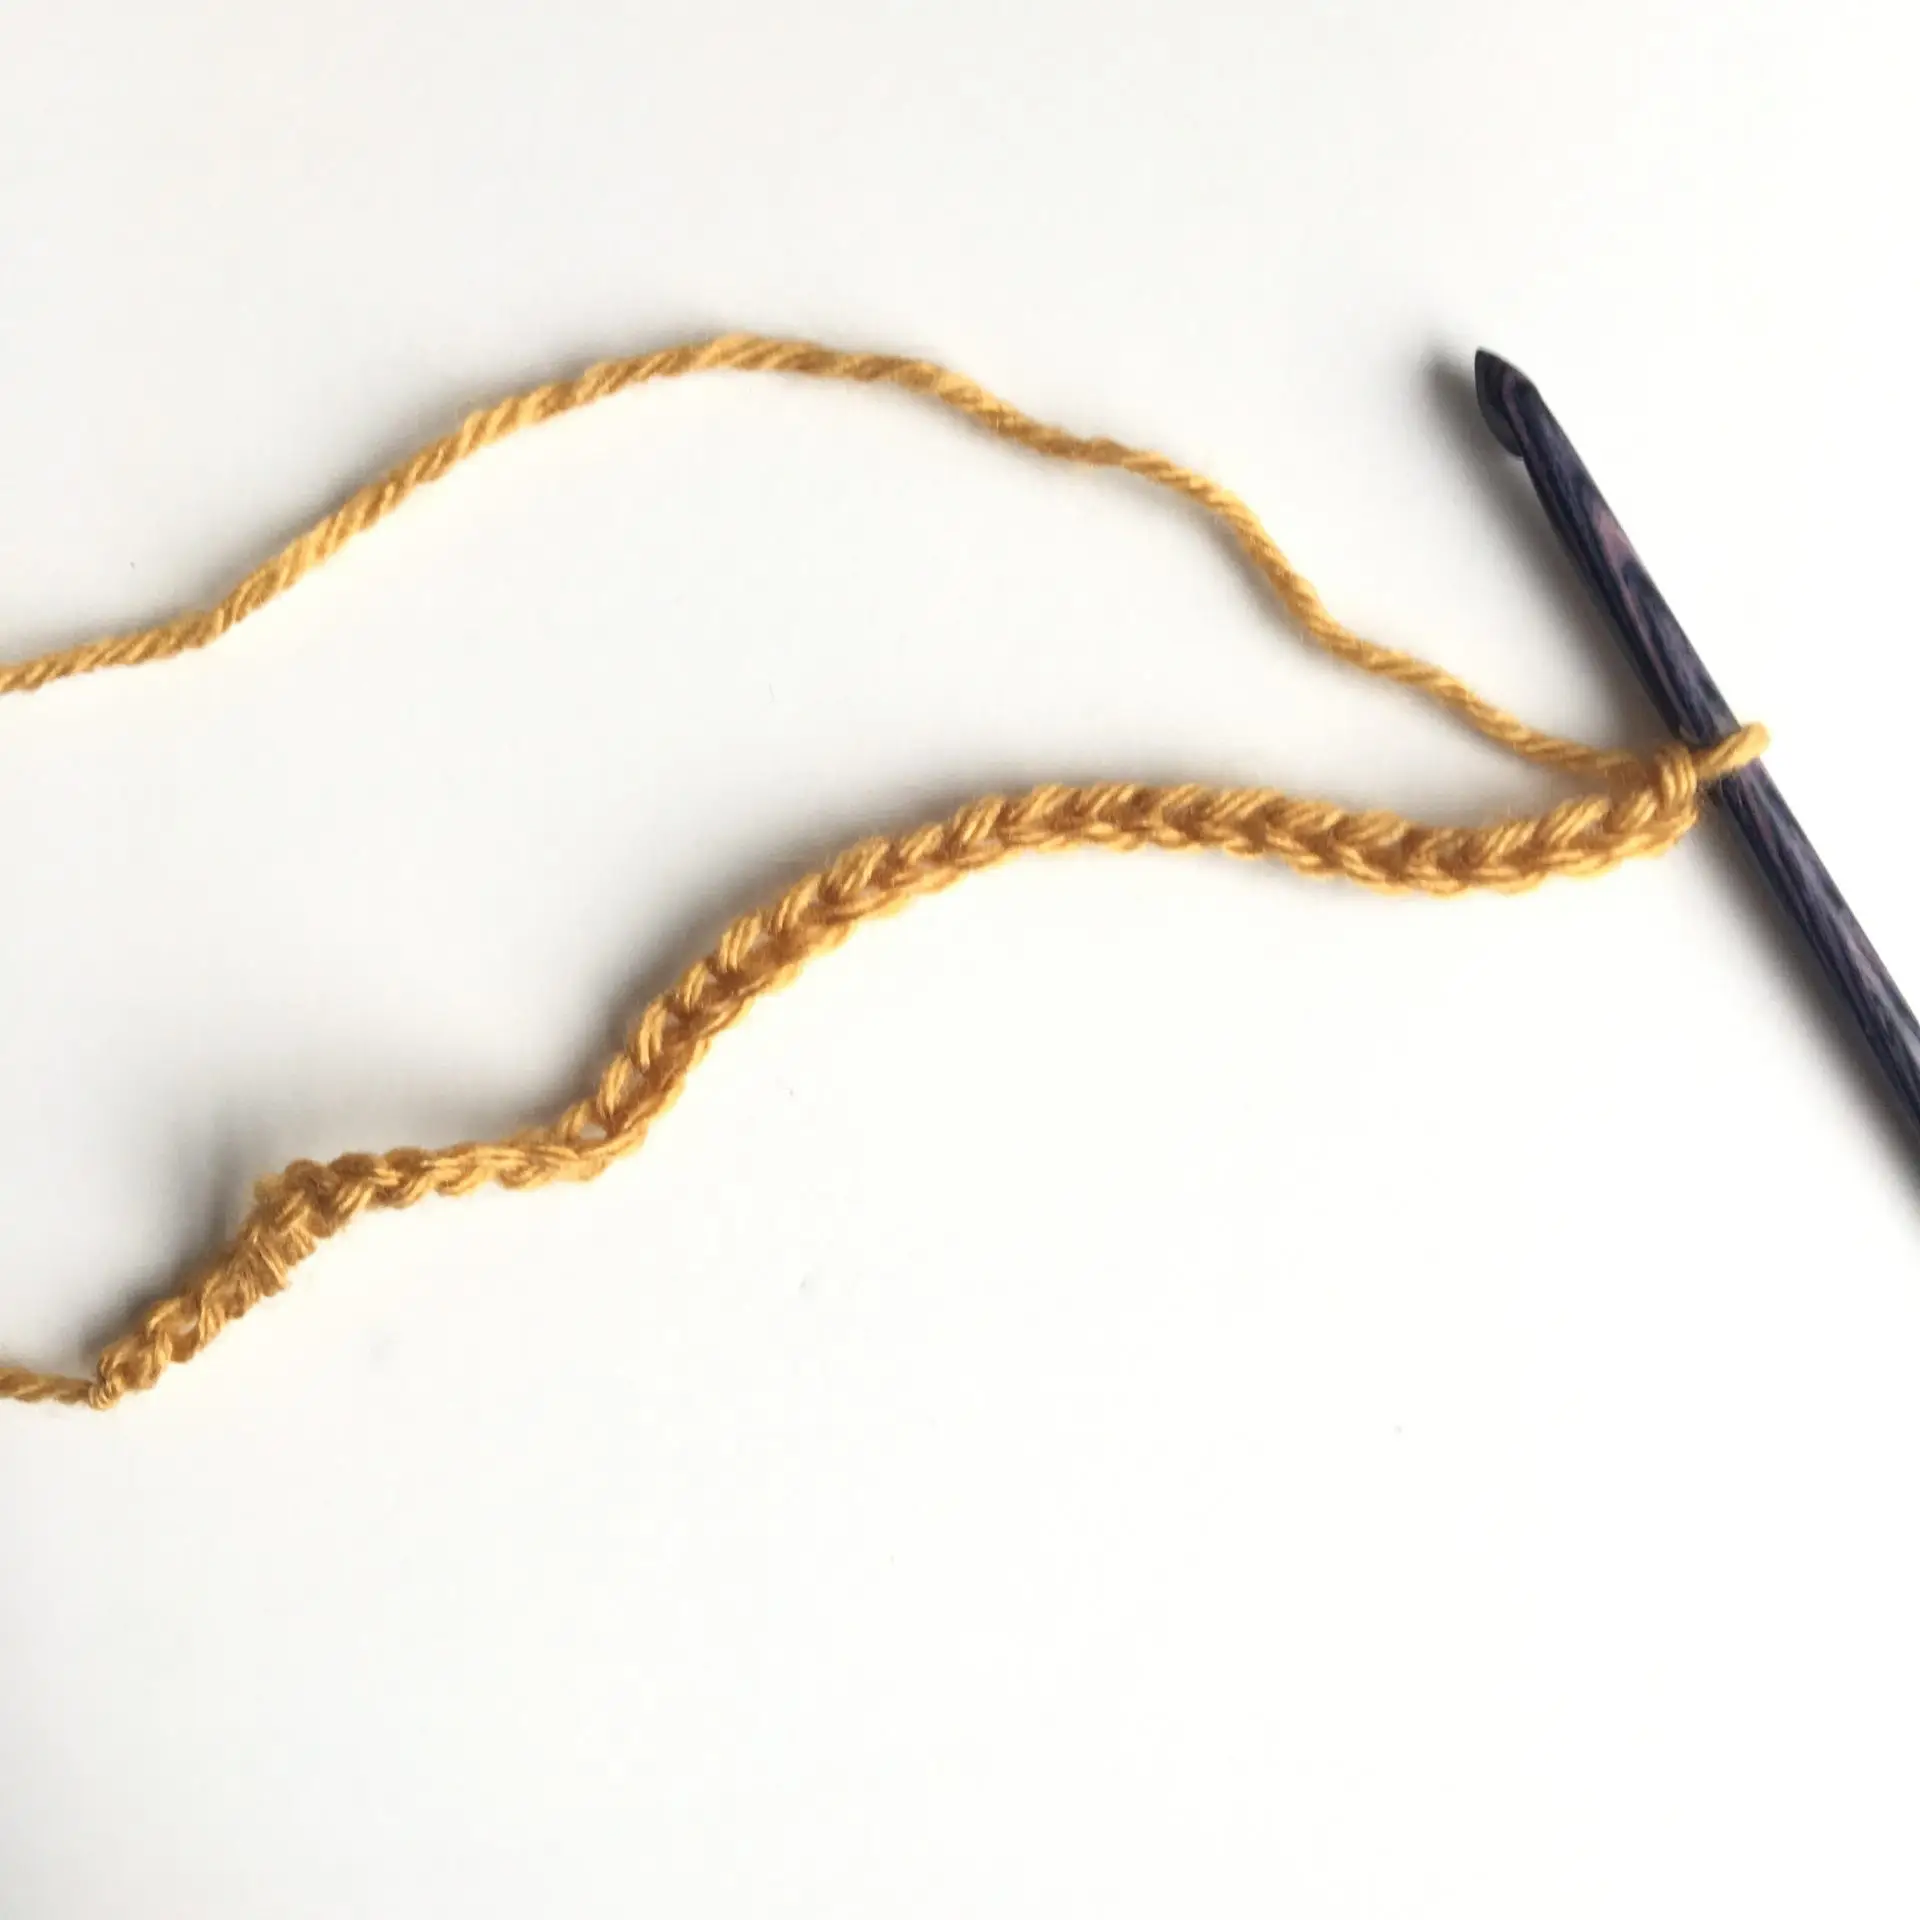 Tunisian Crochet Knit Stitch Process 1